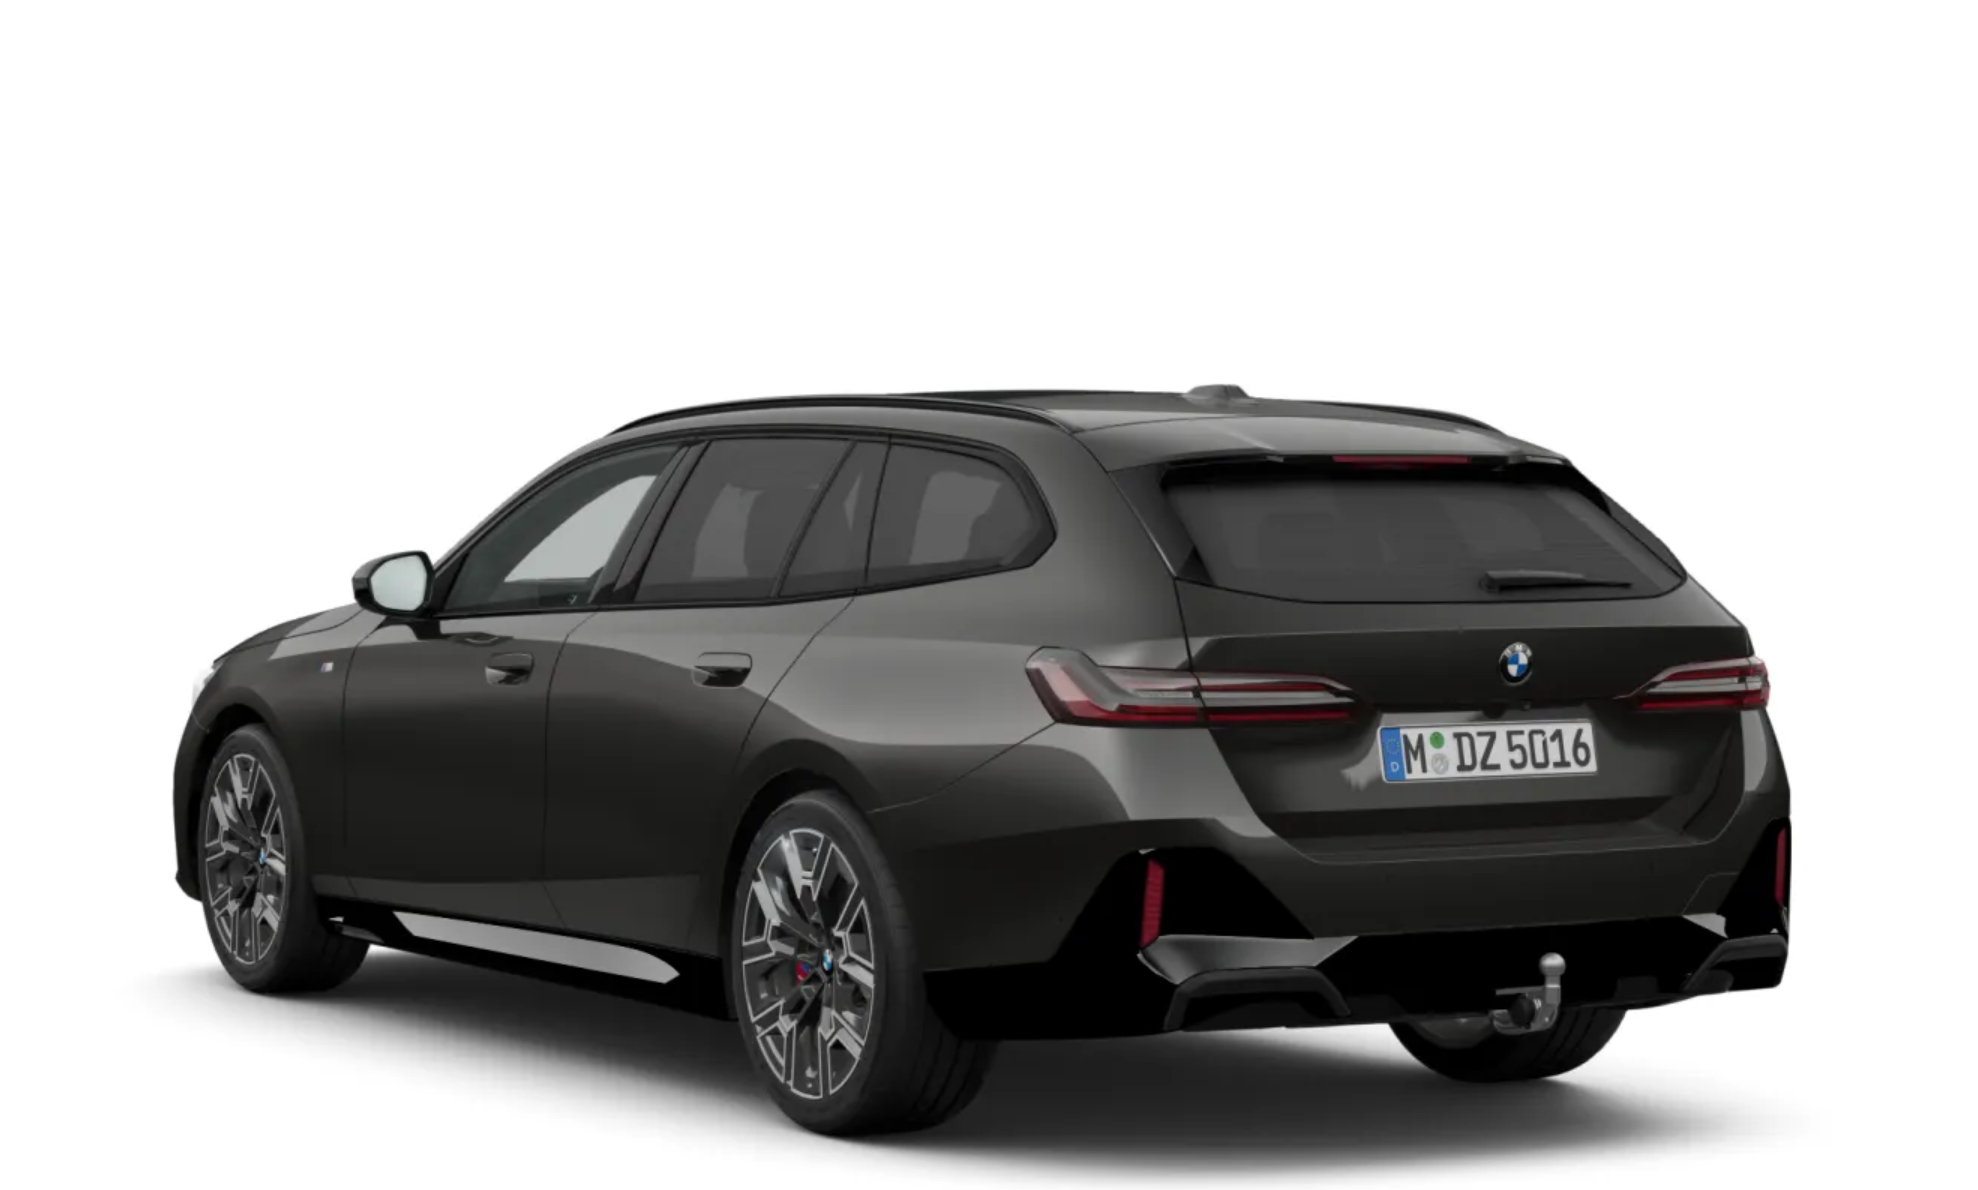 BMW 520d xDrive Mpaket Touring | nové auto k objednání do výroby | byznys naftové kombi | nový facelift  | první objednávky | nákup online | autoibuy.com